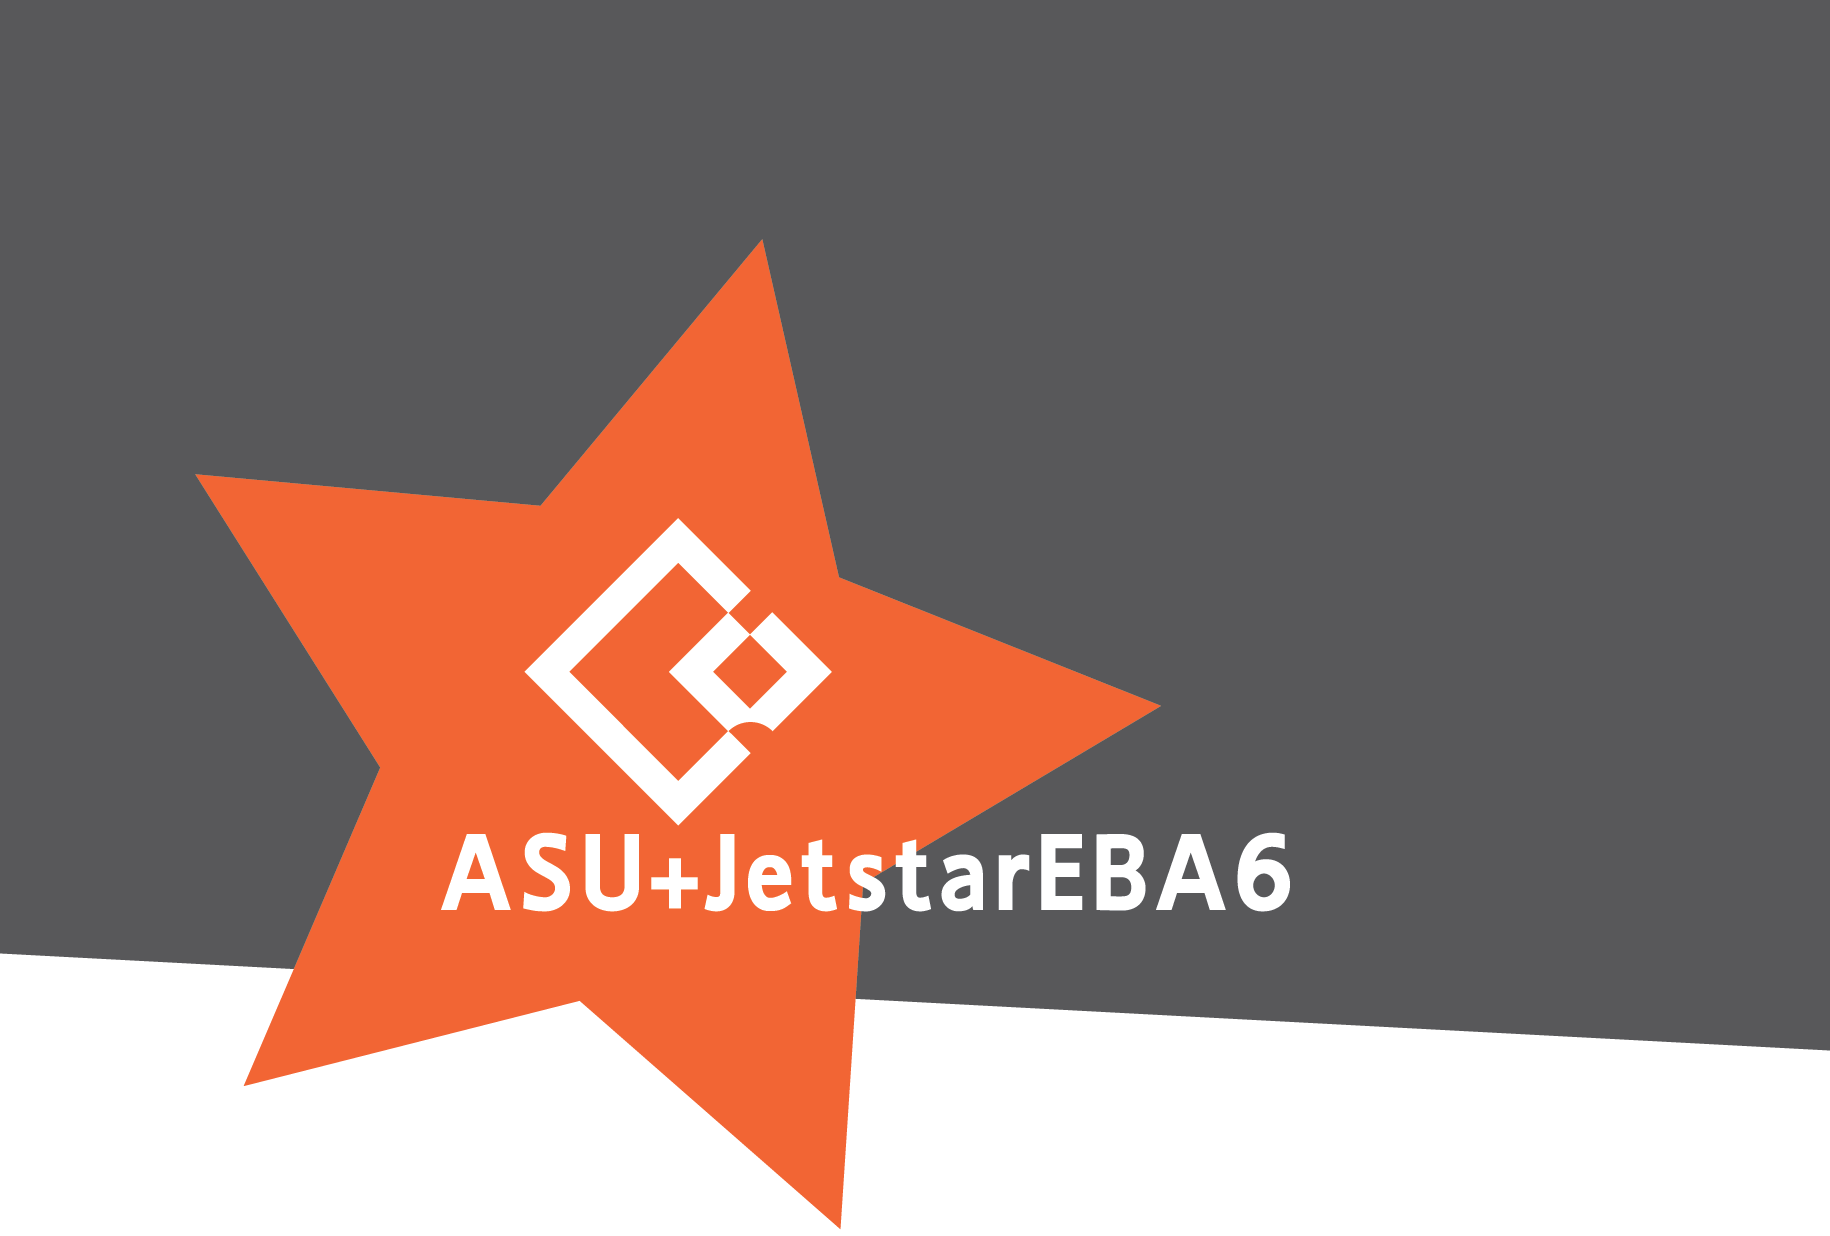 Jetstar EBA6 logo button